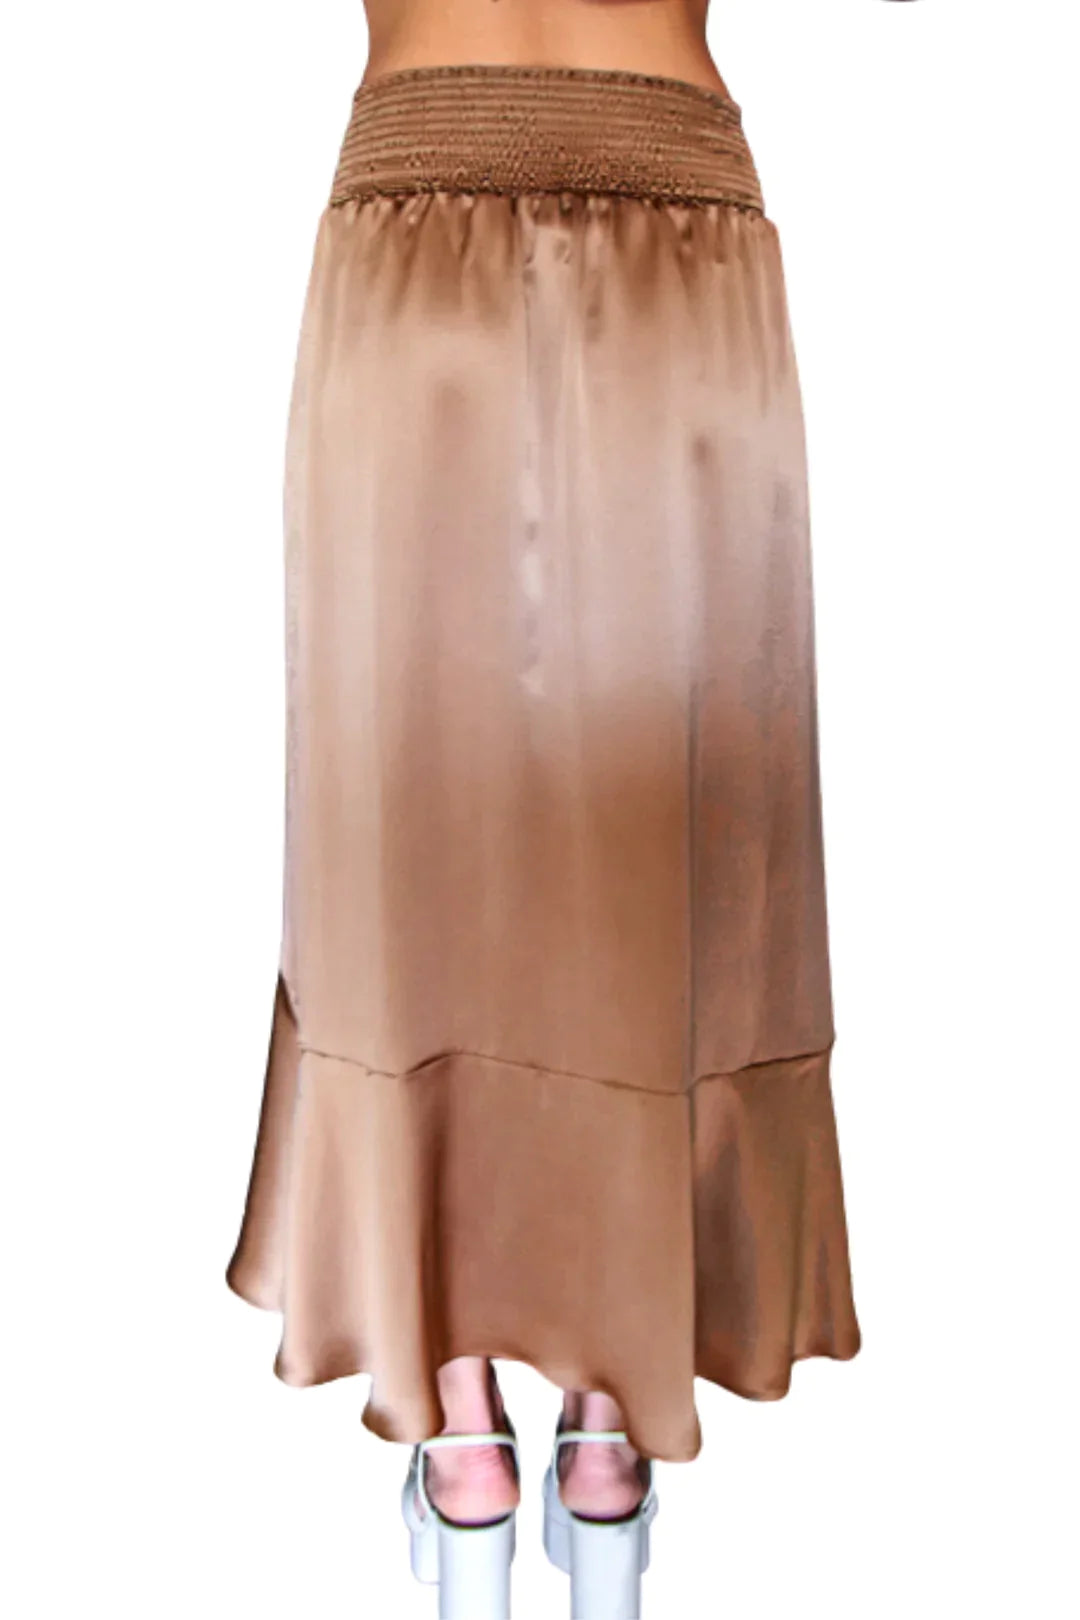 Vanita Rosa Long skirt Noa Silk - Premium  from Marina St Barth - Just $499! Shop now at Marina St Barth